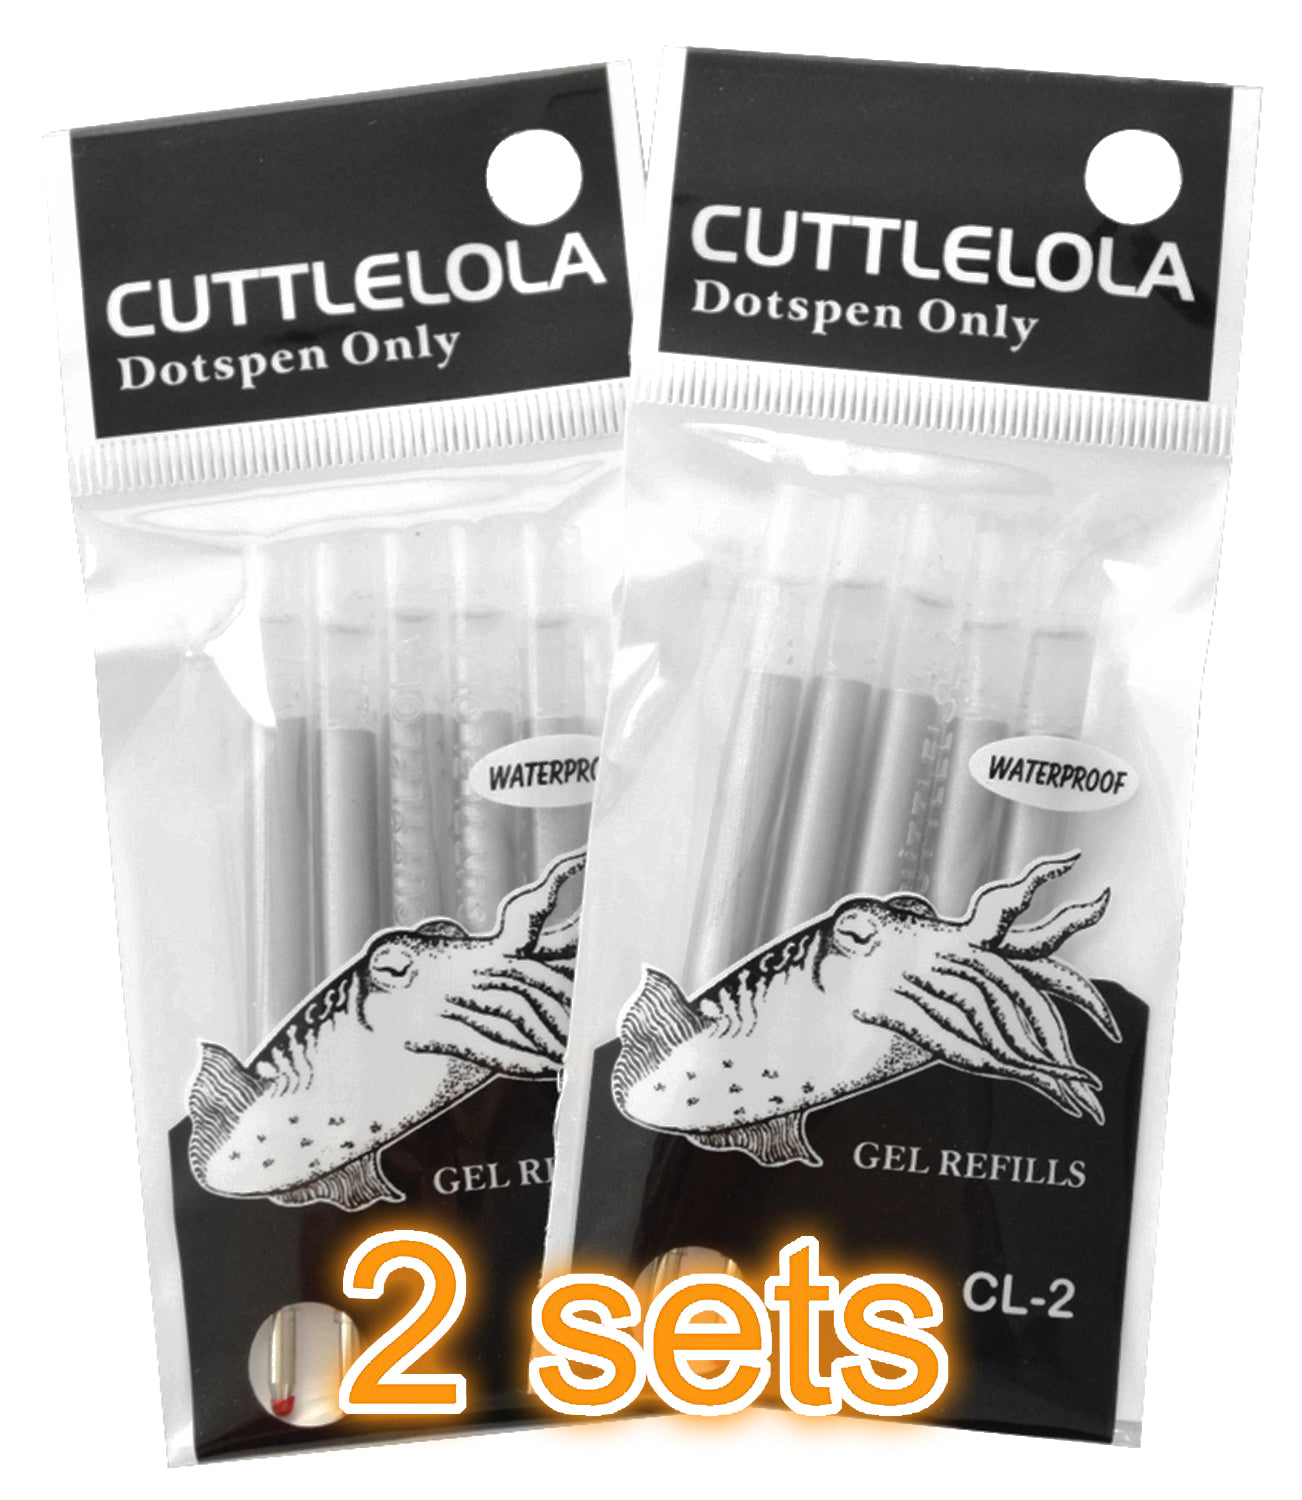 Cuttlelola Electric Dotspen